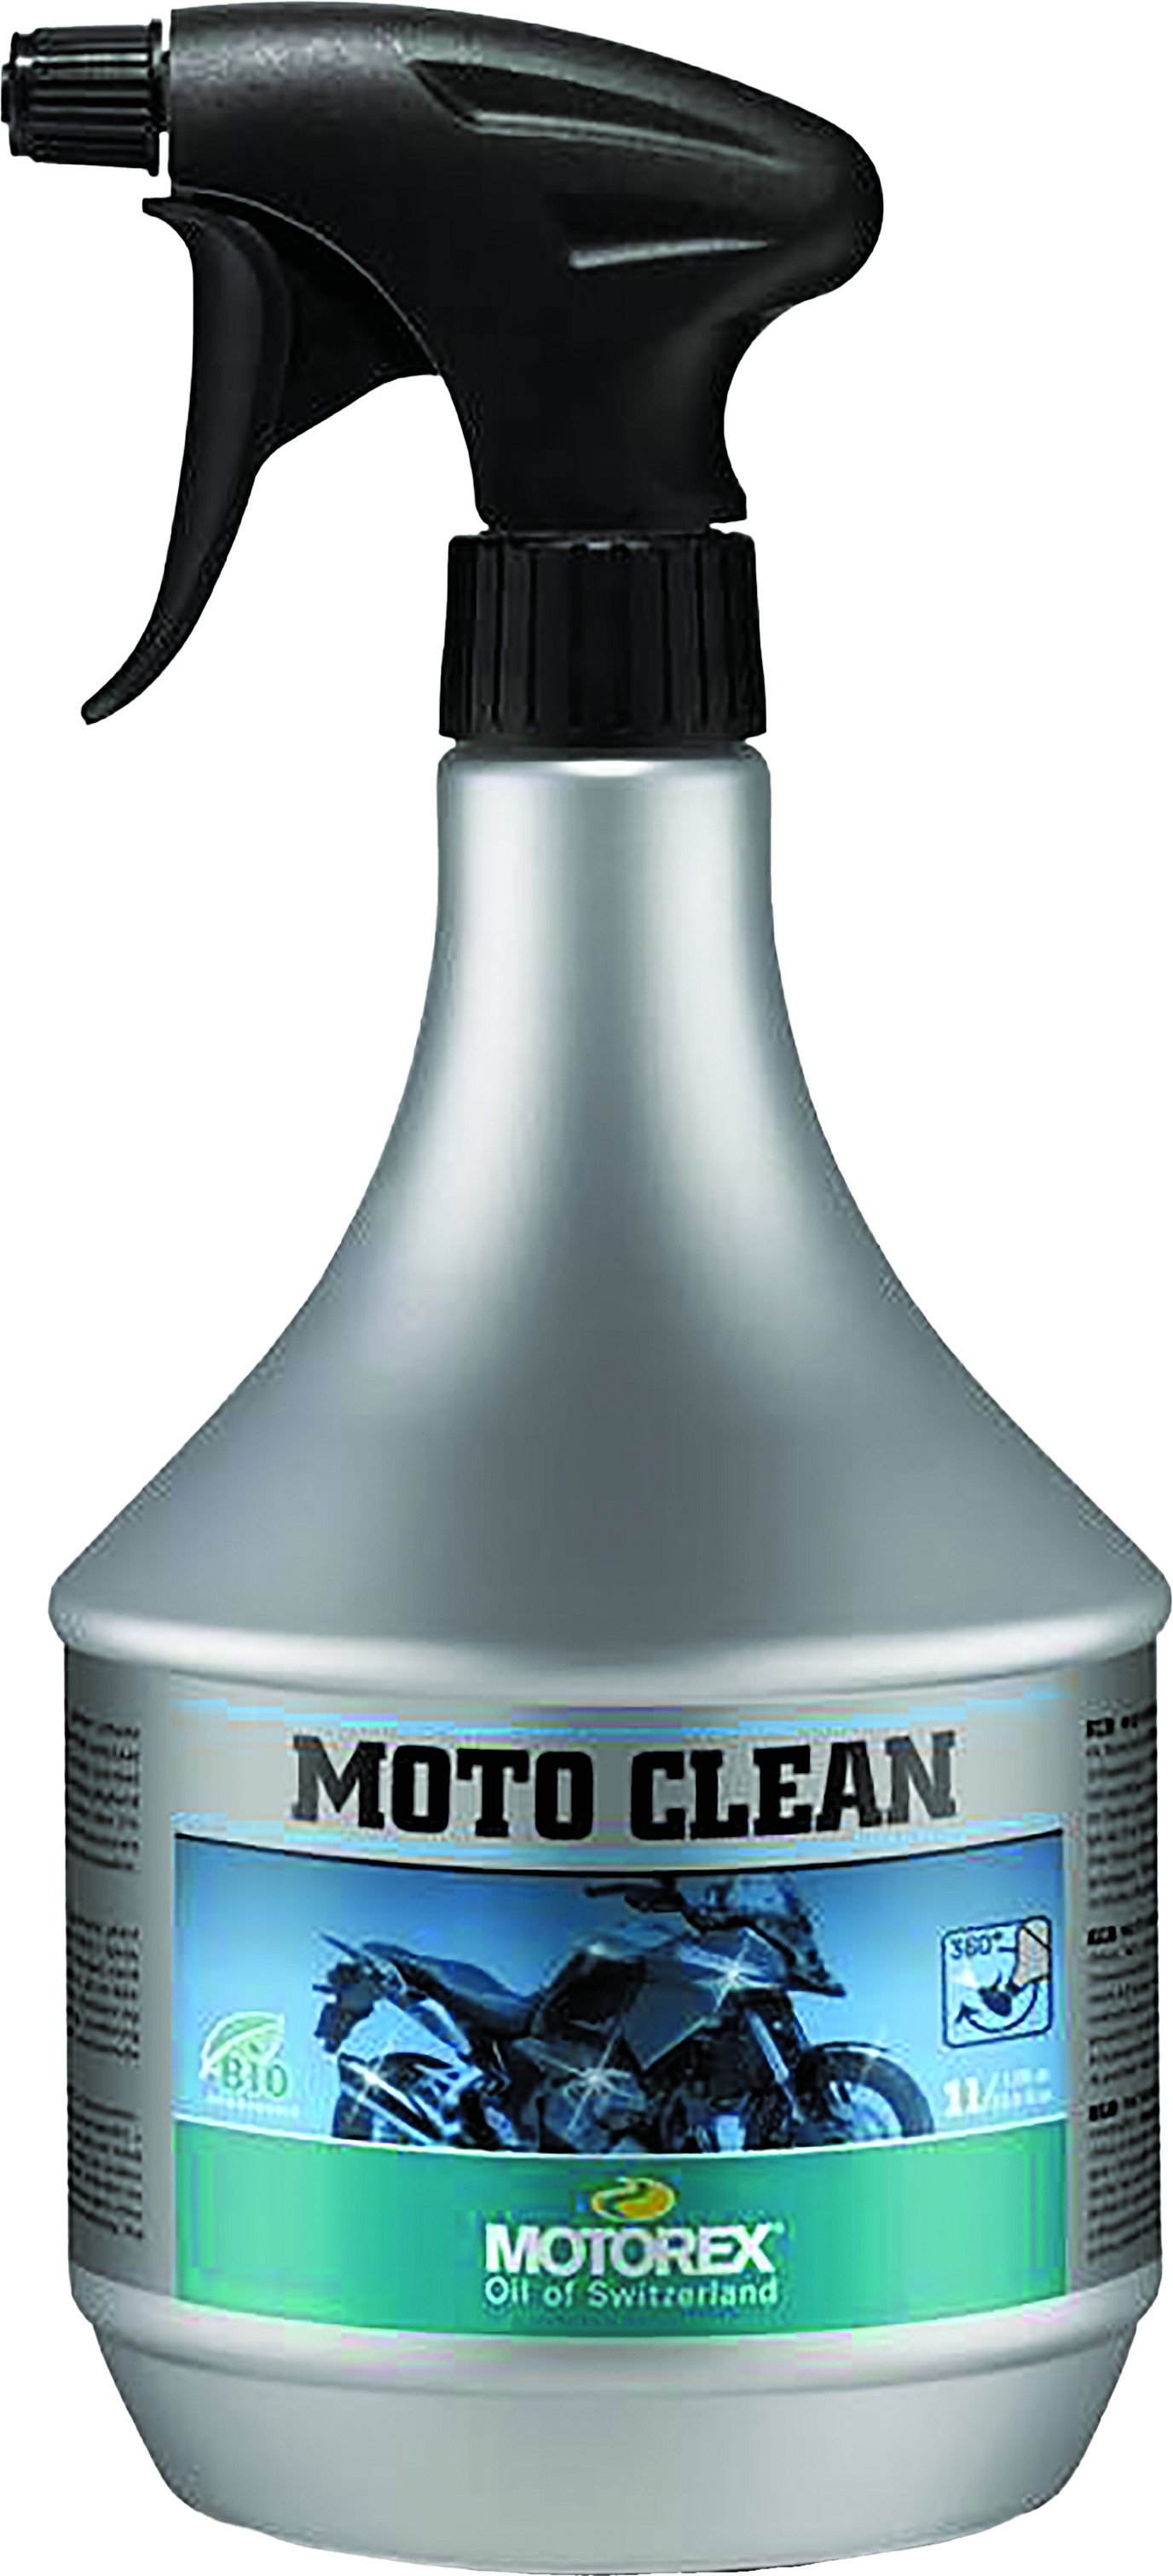 Motorex - Moto Clean (1 Liter) - 109334